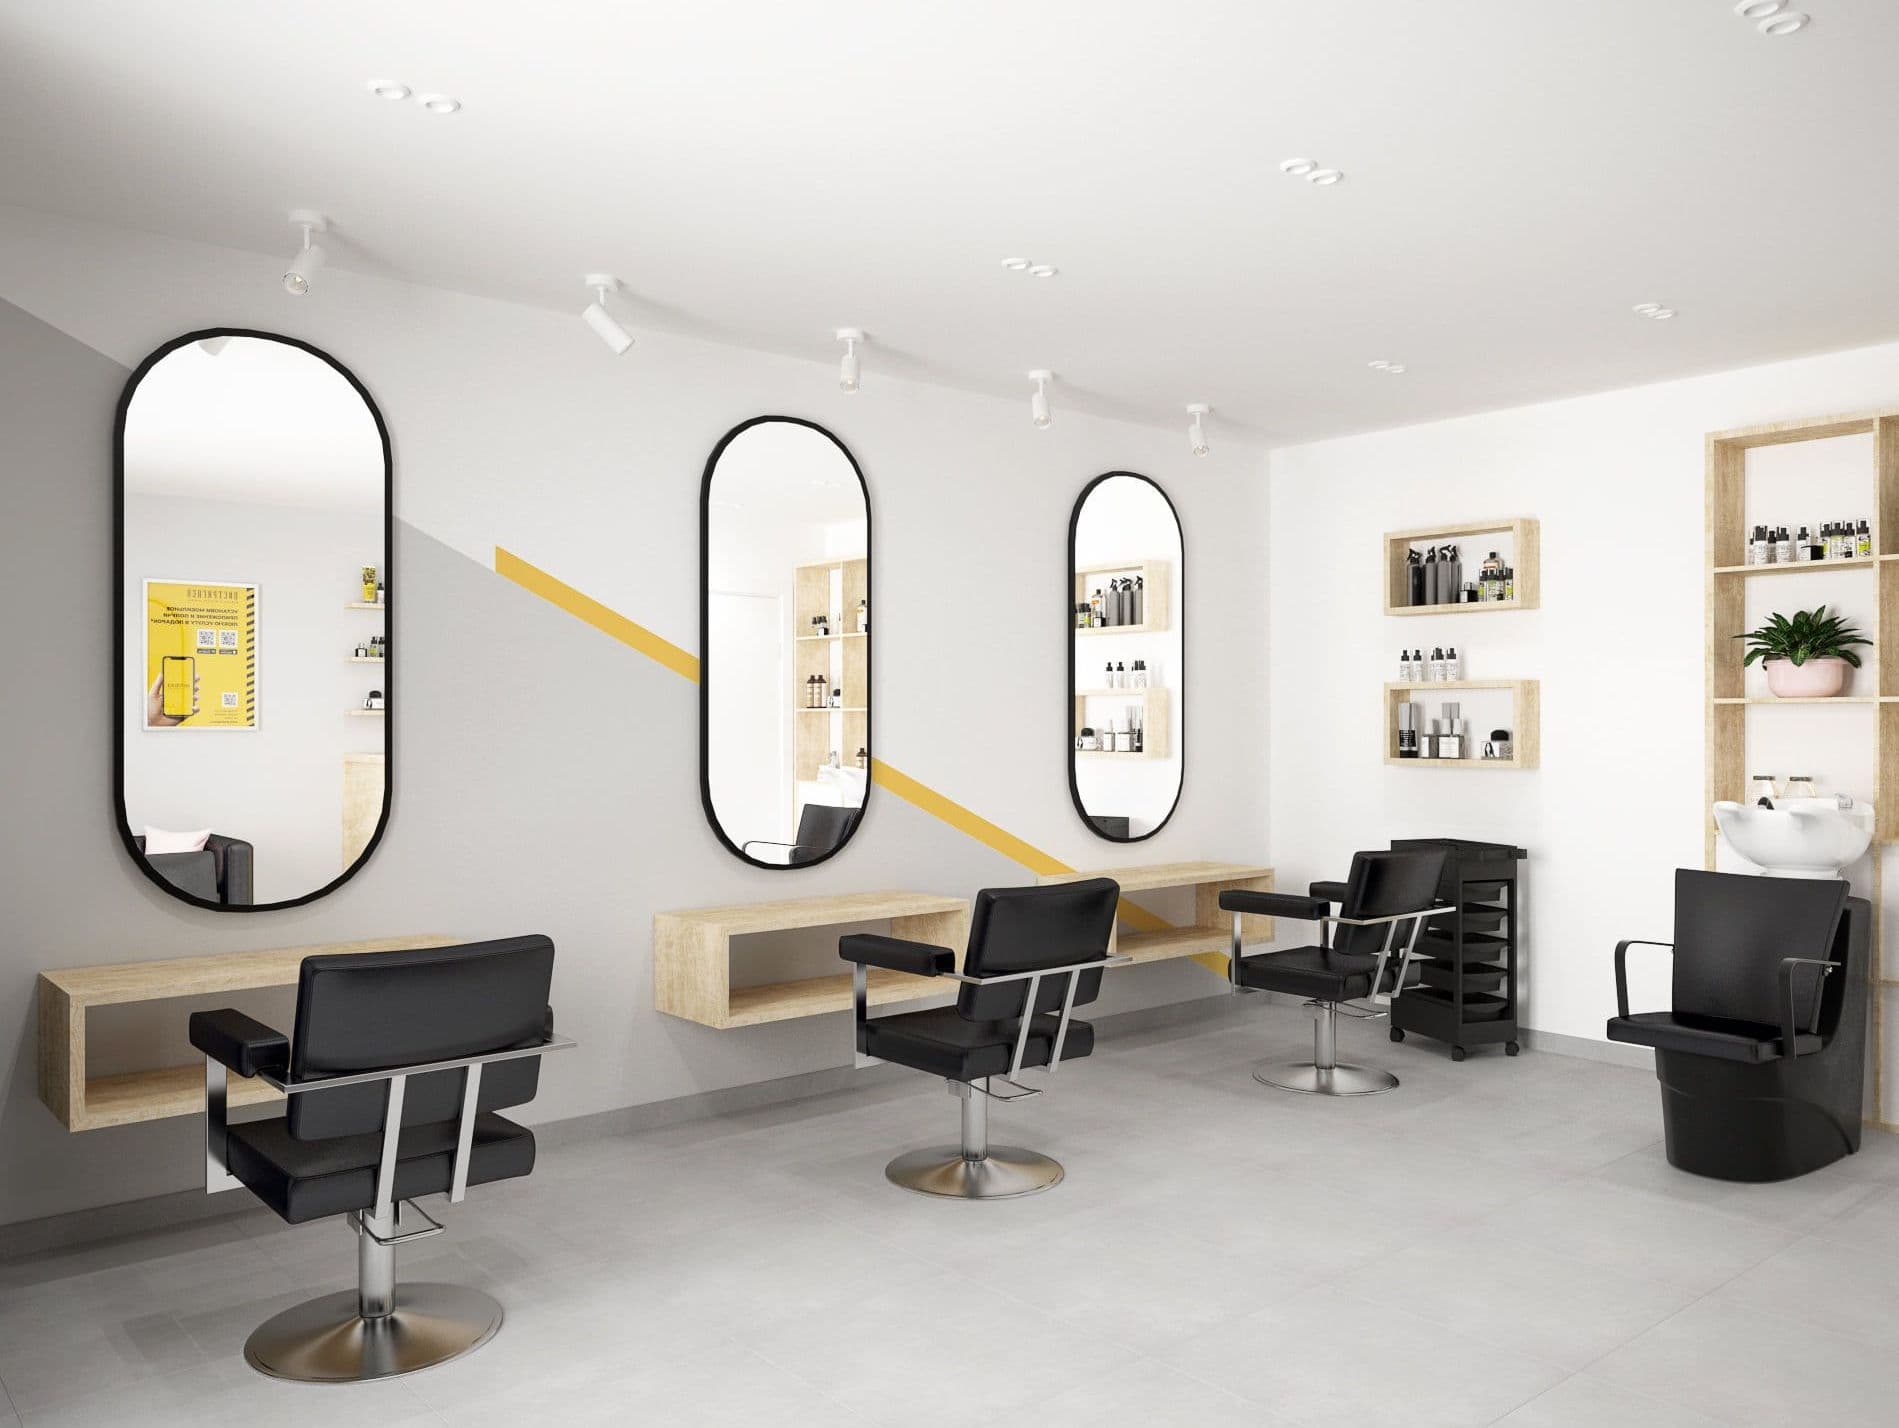 Дизайн интерьера франшизы салона красоты, парикмахерской в скандинавском стиле, в светлых тонах с недорогим ремонтом, в небольшом помещении на 3 рабочих места